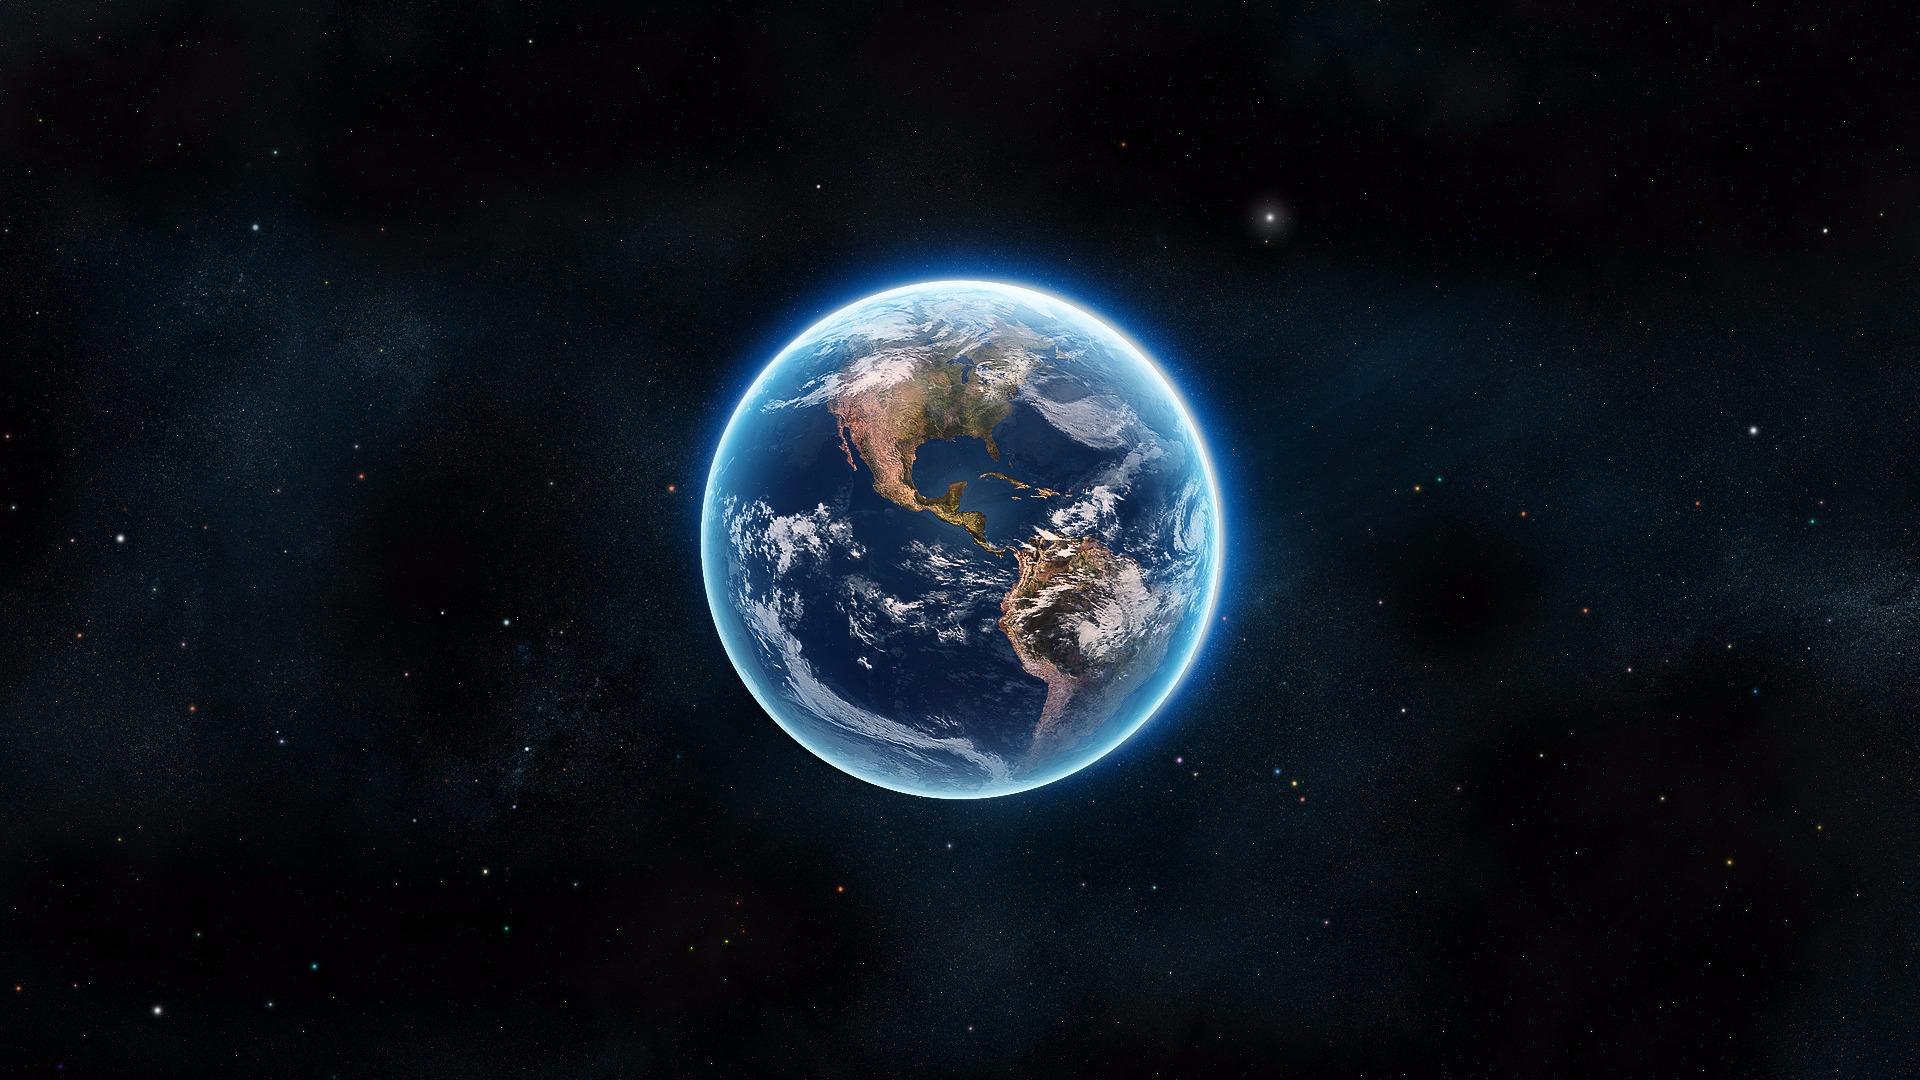 Earth Wallpapers - Top Free Earth Backgrounds - WallpaperAccess: Hình nền trái đất - Trải nghiệm không gian sống xanh như trái đất với hình nền độc đáo và chân thực nhất. Cập nhật những hình nền trái đất đẹp nhất, mang tính khoa học và hiện đại để bạn có thể trang trí cho chiếc máy tính của mình với tinh thần gìn giữ và yêu quý hành tinh của chúng ta.